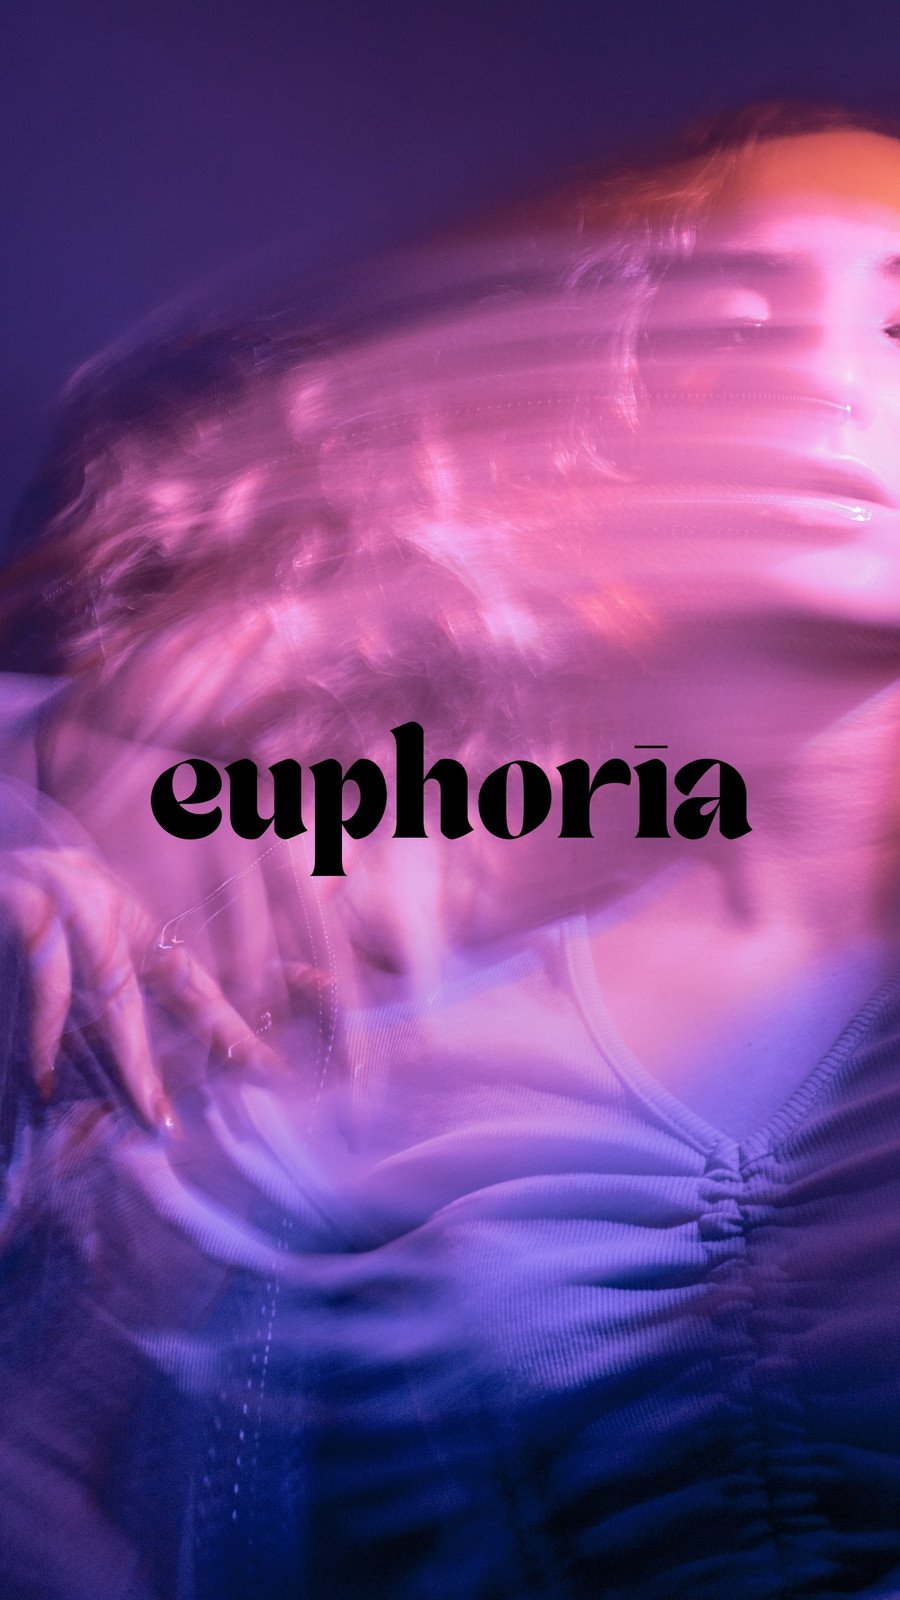 Buy Euphoria Wallpaper Online In India  Etsy India